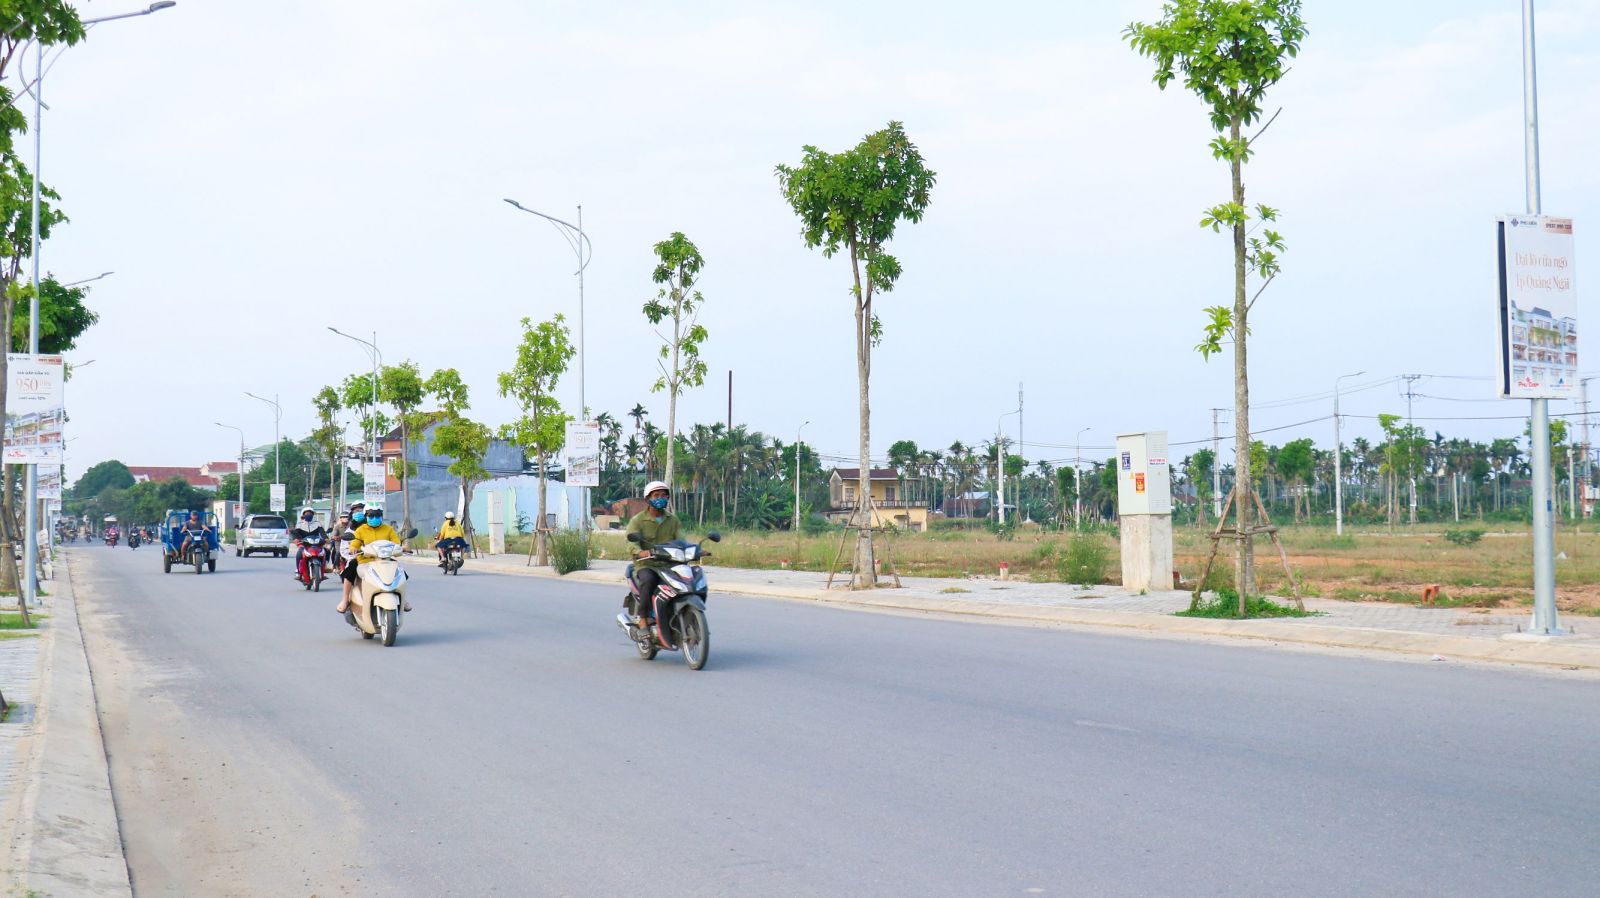 QUẢNG NGÃI: QUY HOẠCH KHU TÁI ĐỊNH CƯ MỚI ĐỐI DIỆN DỰ ÁN PHÚ ĐIỀN RESIDENCES - Viet Nam Smart City